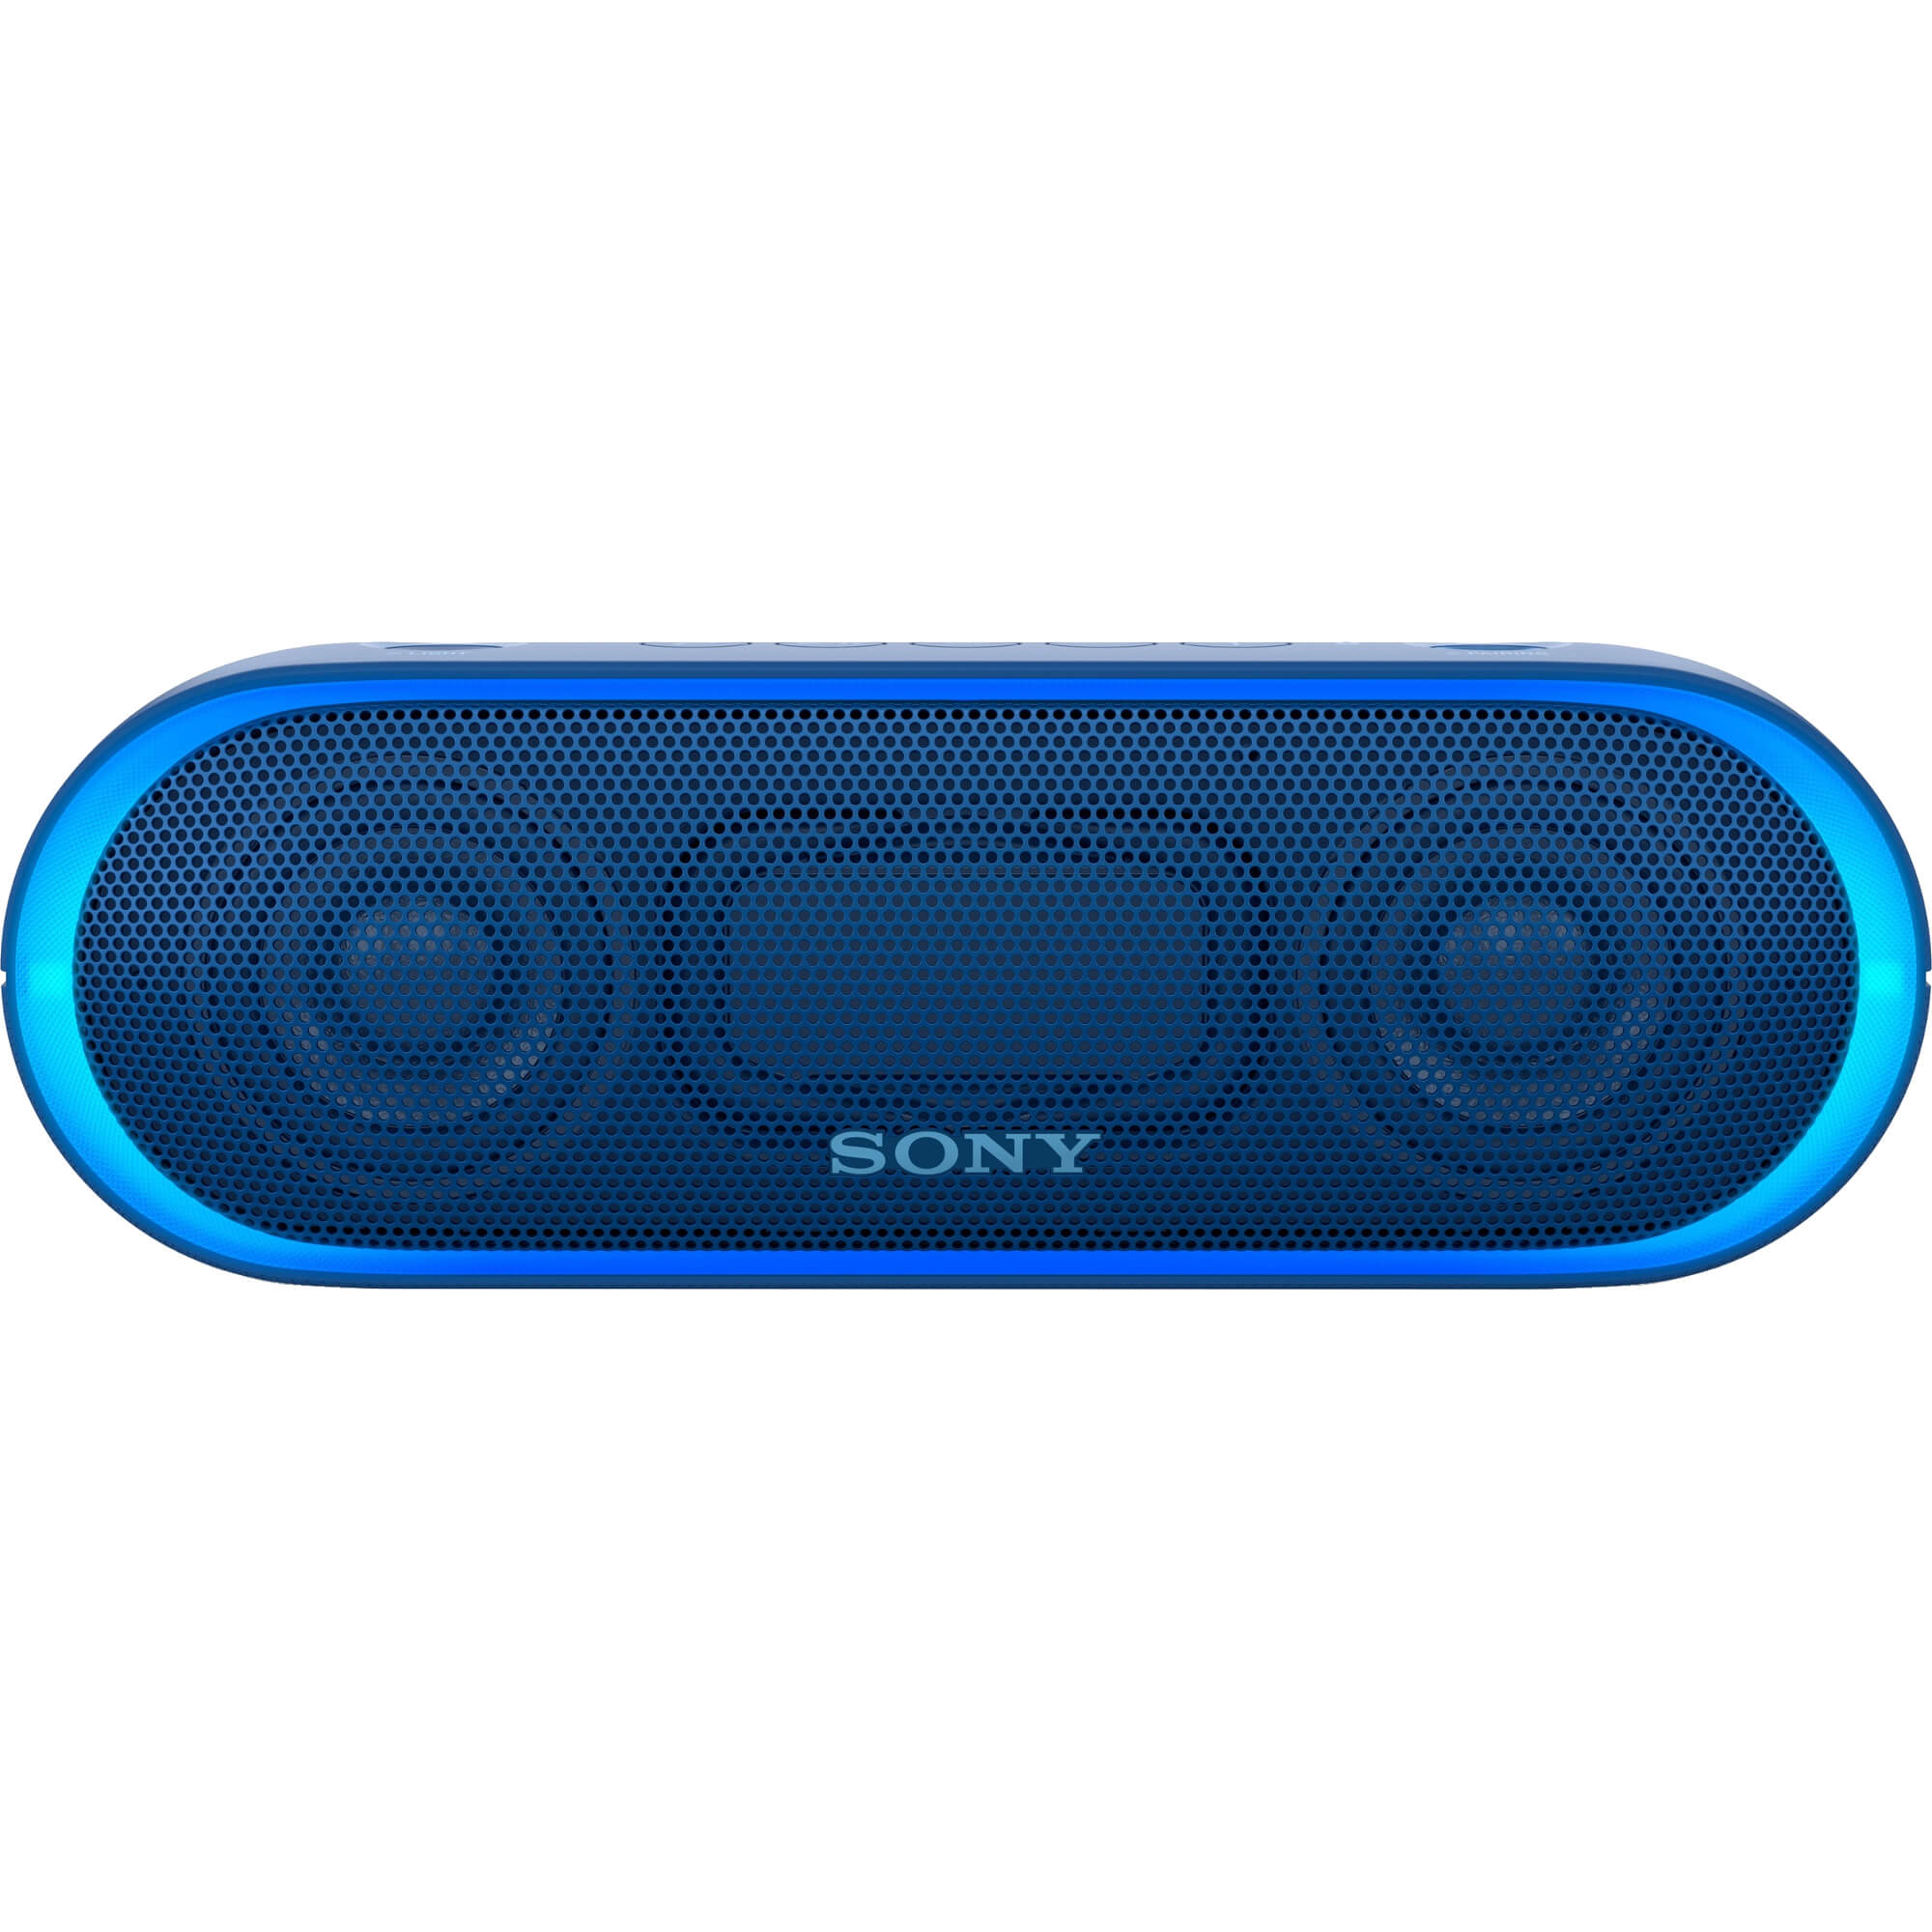  Boxa portabila Sony SRSXB20L.CE7, Bluetooth, Albastru 